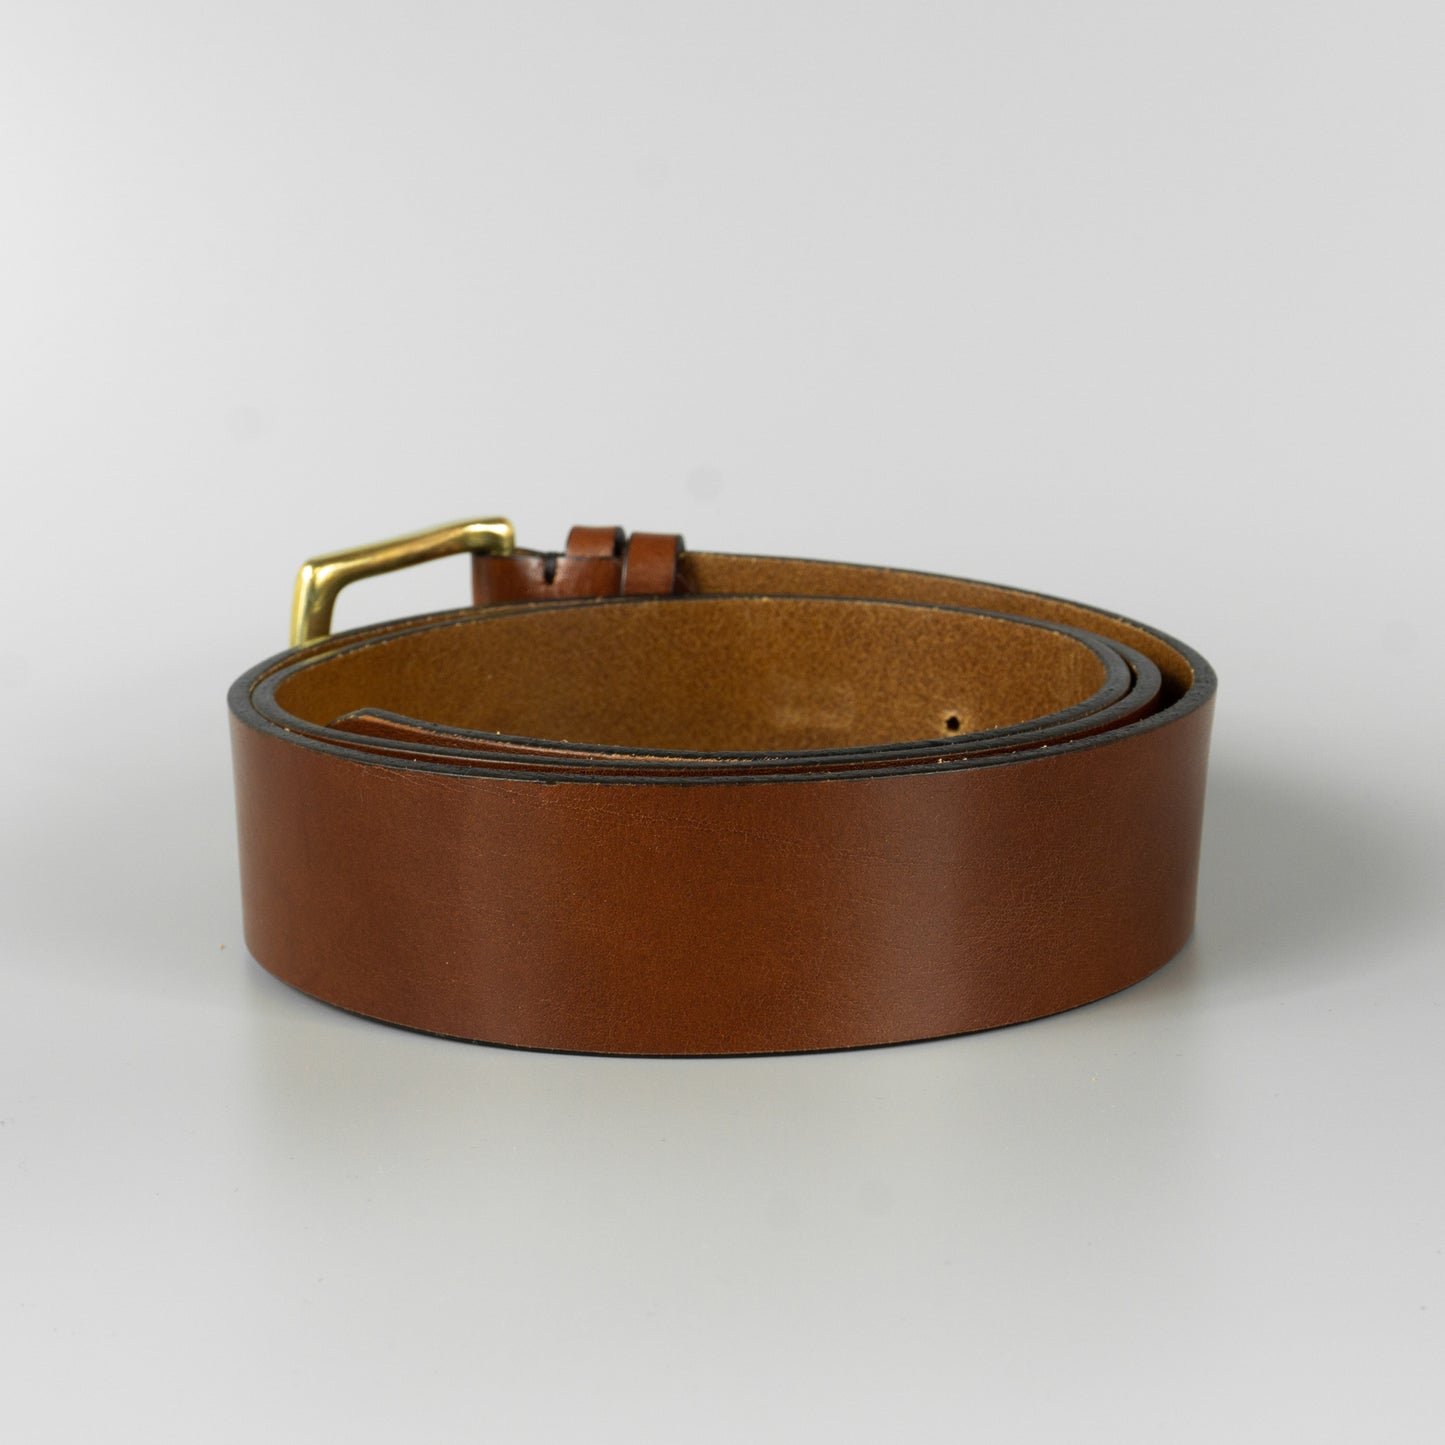 Hnedý pánsky kožený opasok do riflí "Morris" široký 4 cm